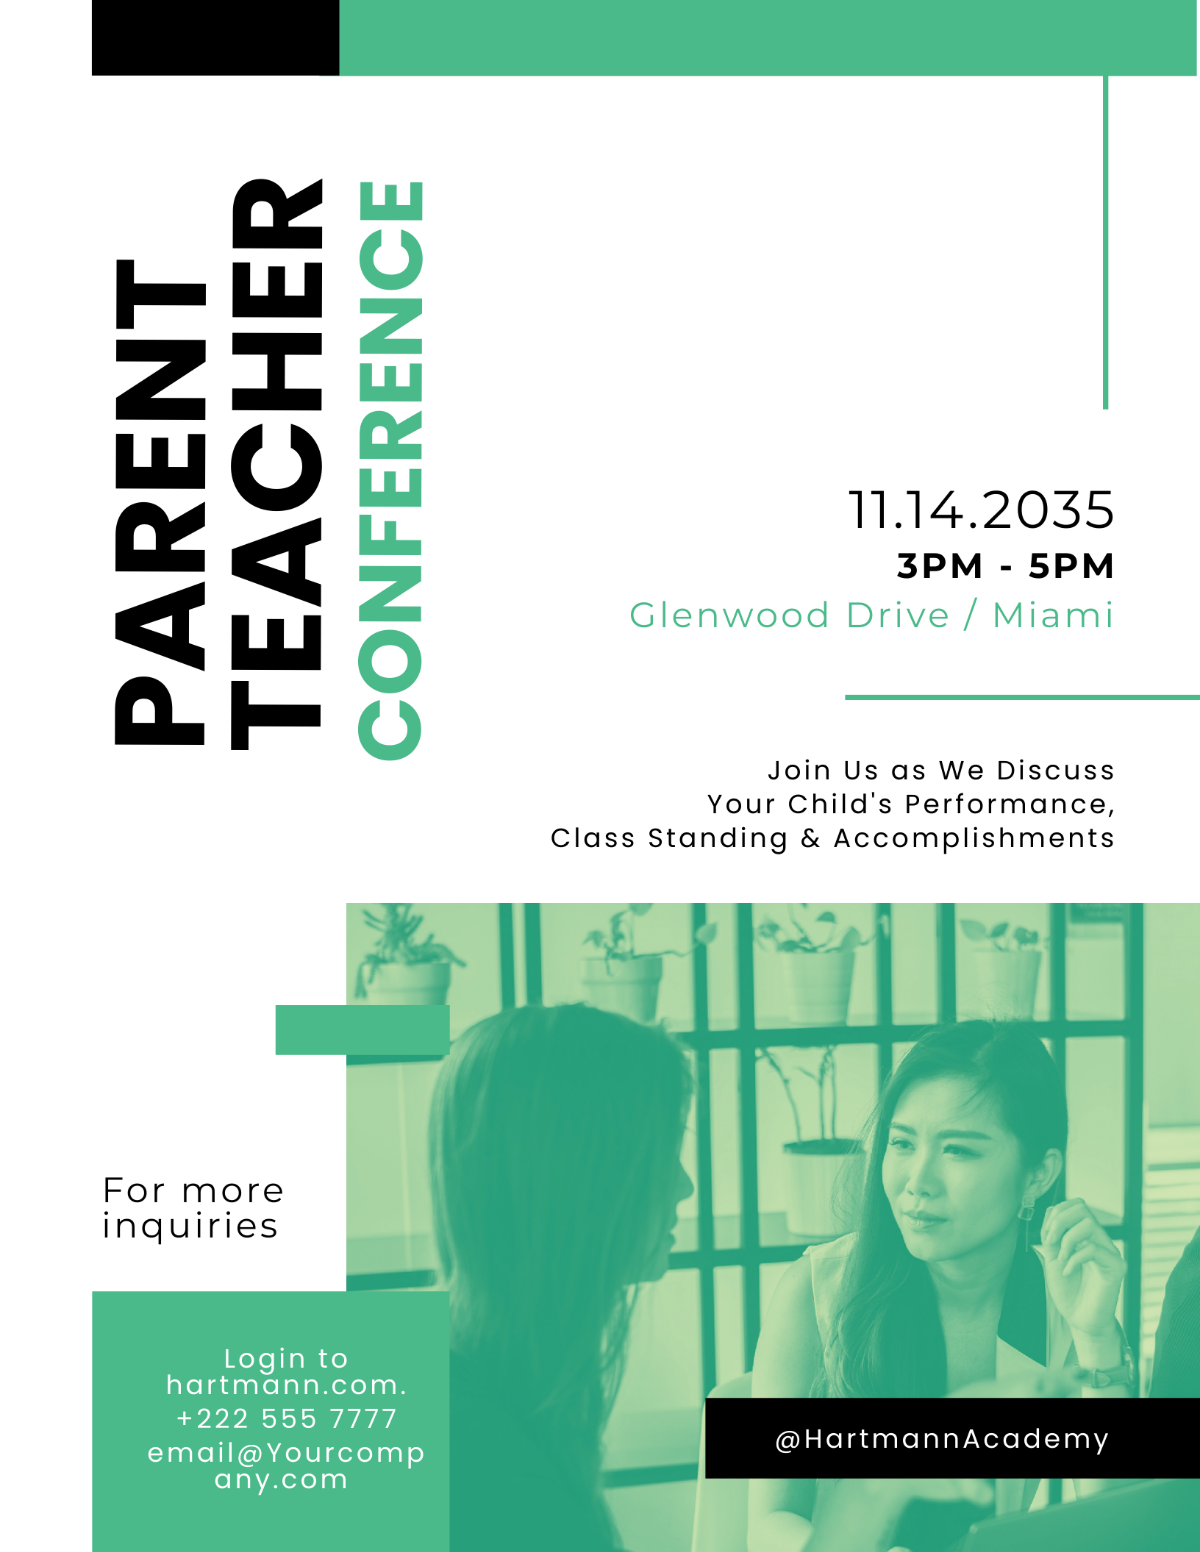 Parent Teacher Conference Flyer